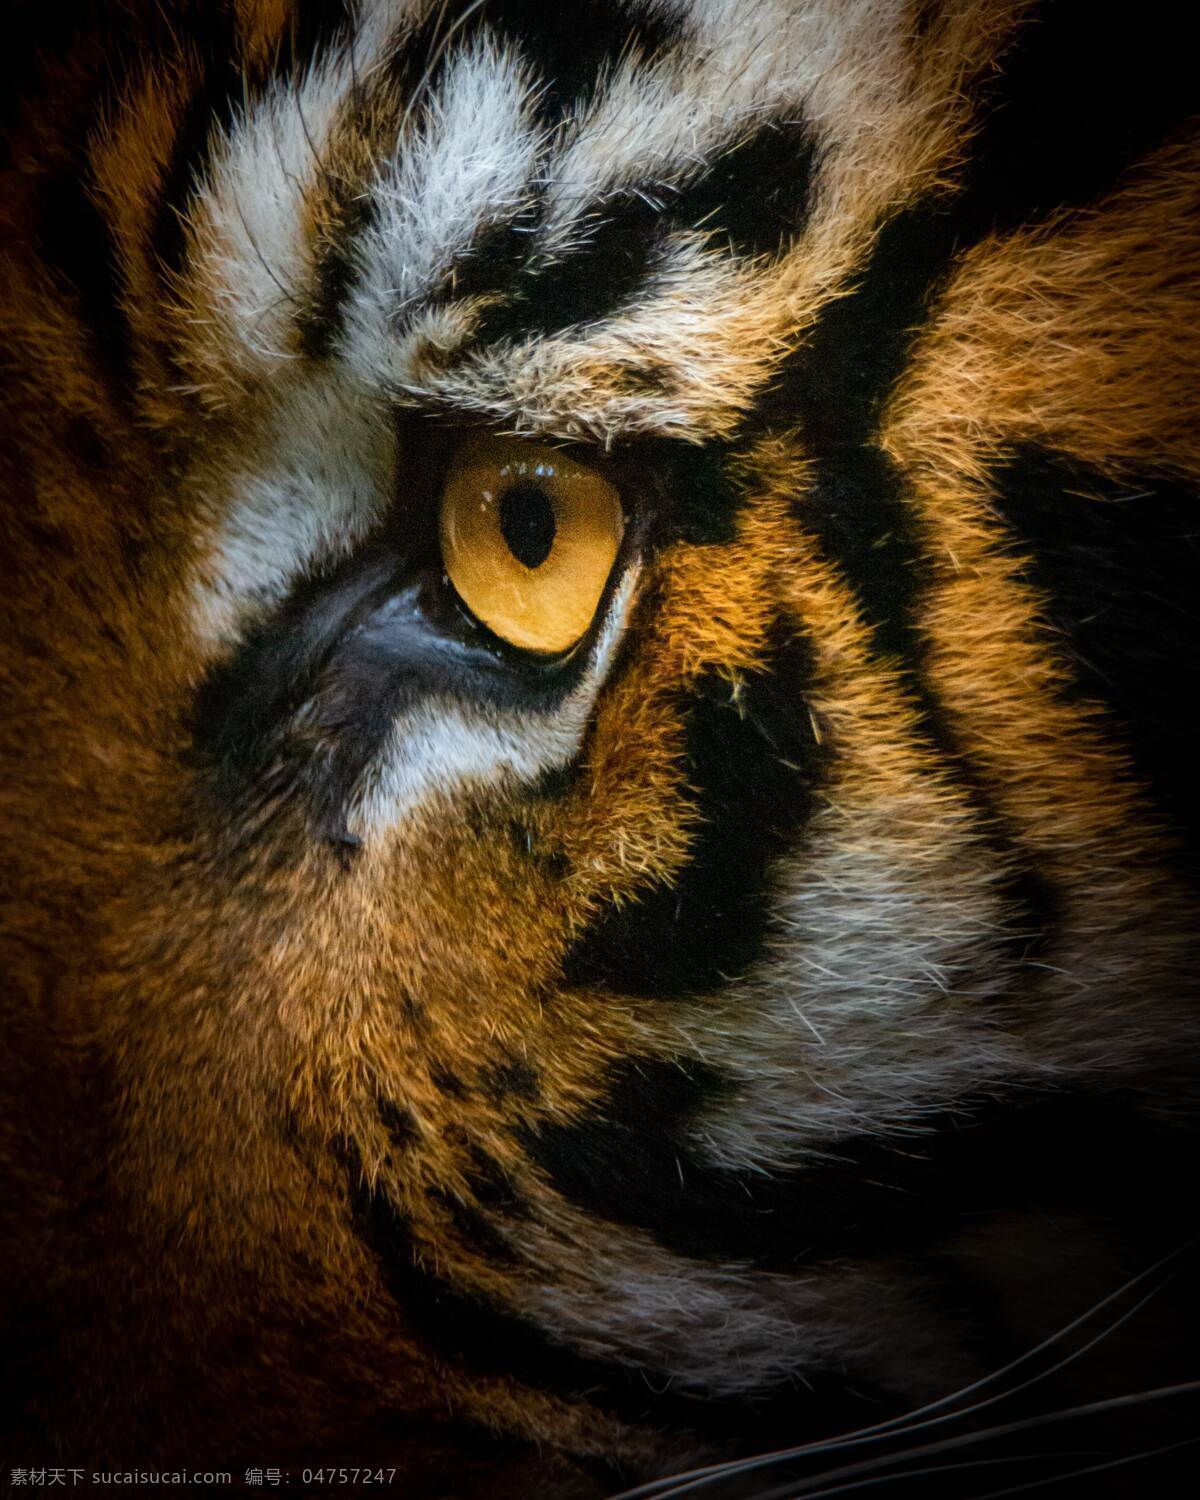 老虎眼睛 老虎 虎 东北虎 孤立 动物 条纹 野生动物 哺乳动物 食肉动物 动物园 生物世界